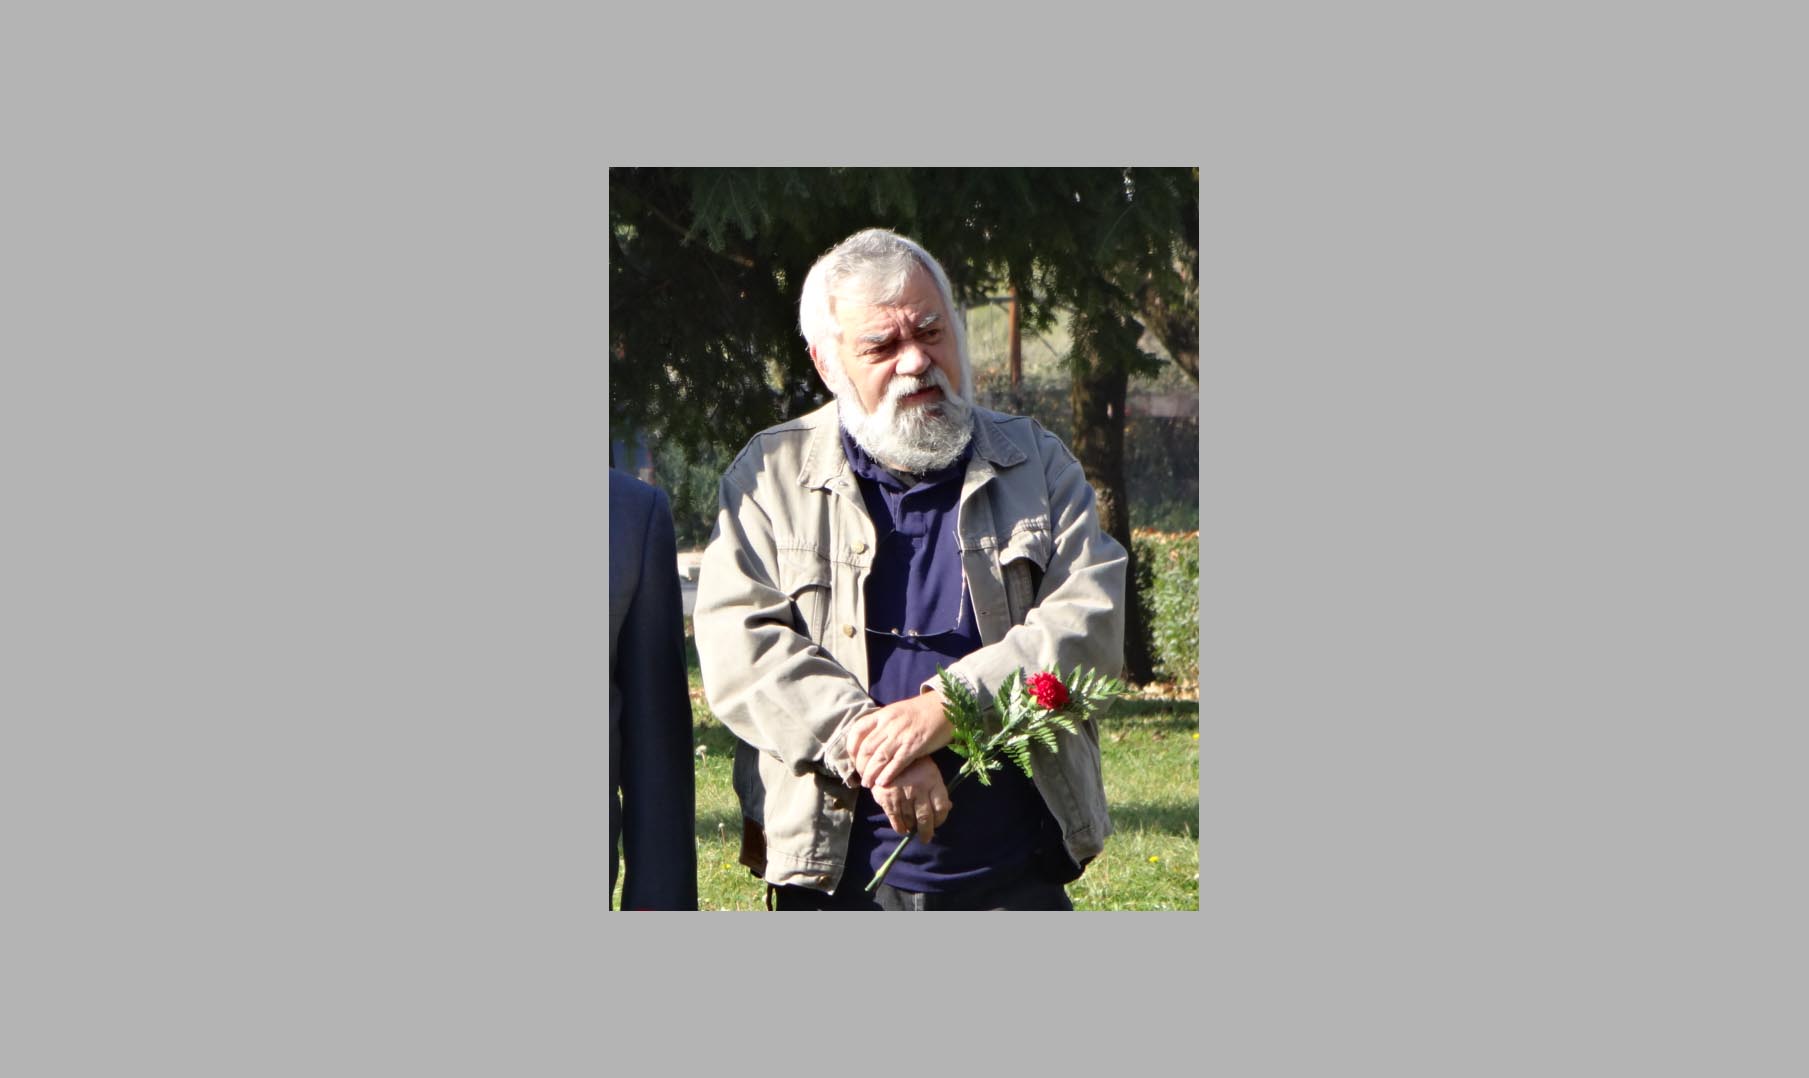 ΣΥΡΙΖΑ Ιωαννίνων: «Αντίο στον δάσκαλο και αγωνιστή Λάκη»